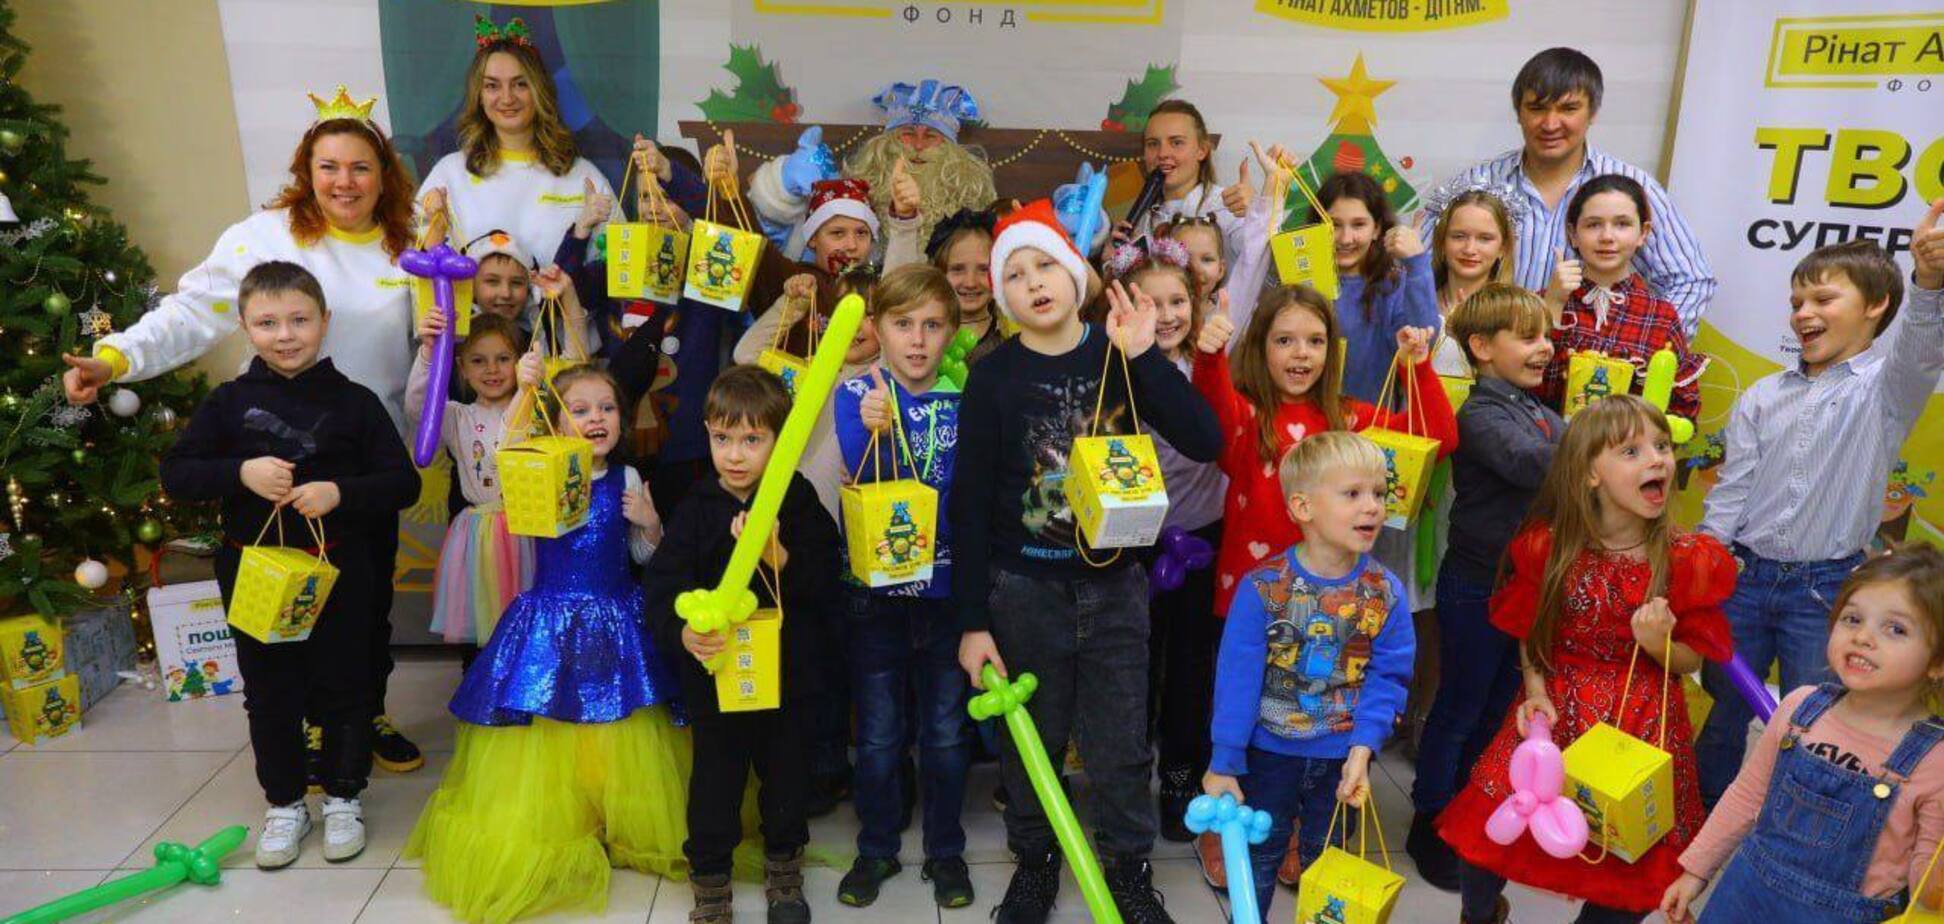 Понад 1,2 млн українських дітей отримали привітання і подарунки у рамках новорічної акції 'Рінат Ахметов – Дітям'